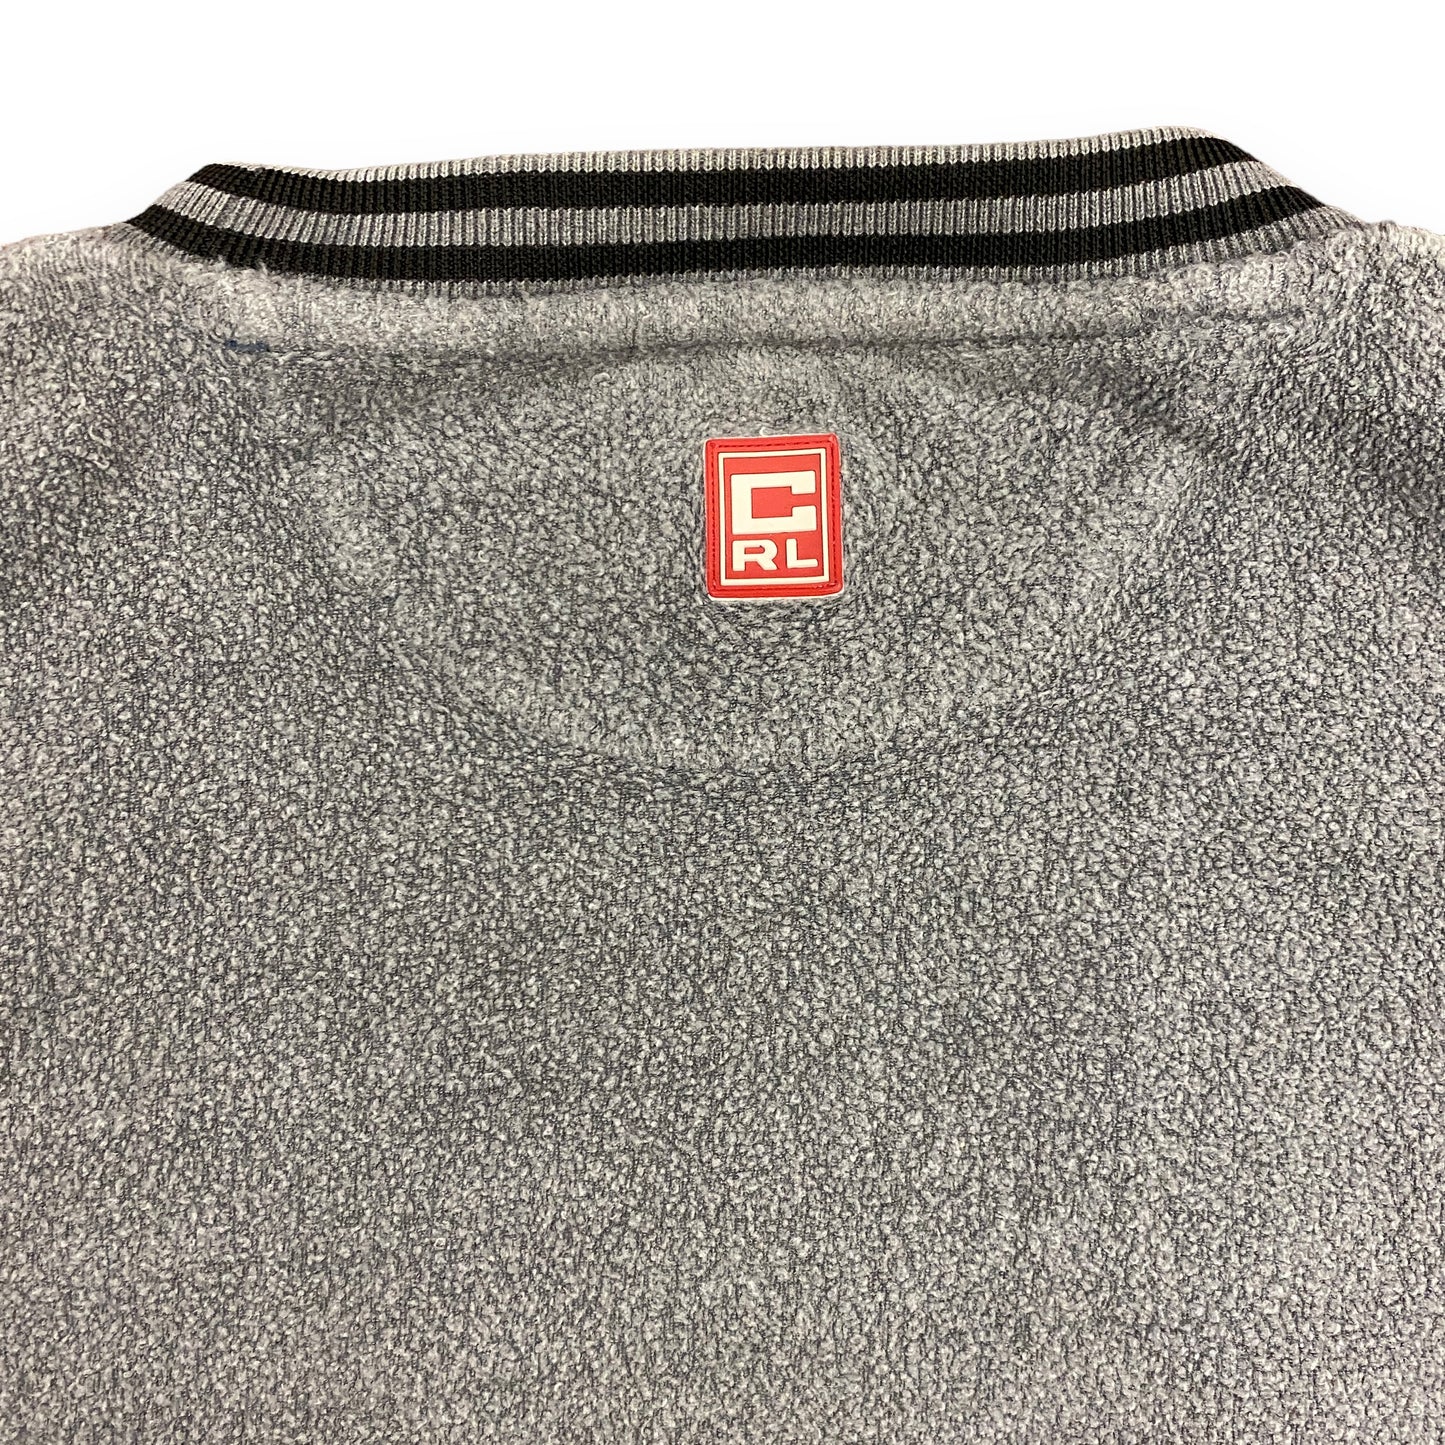 Y2K Chaps Ralph Lauren Gray Fleece Sweatshirt - Size Large